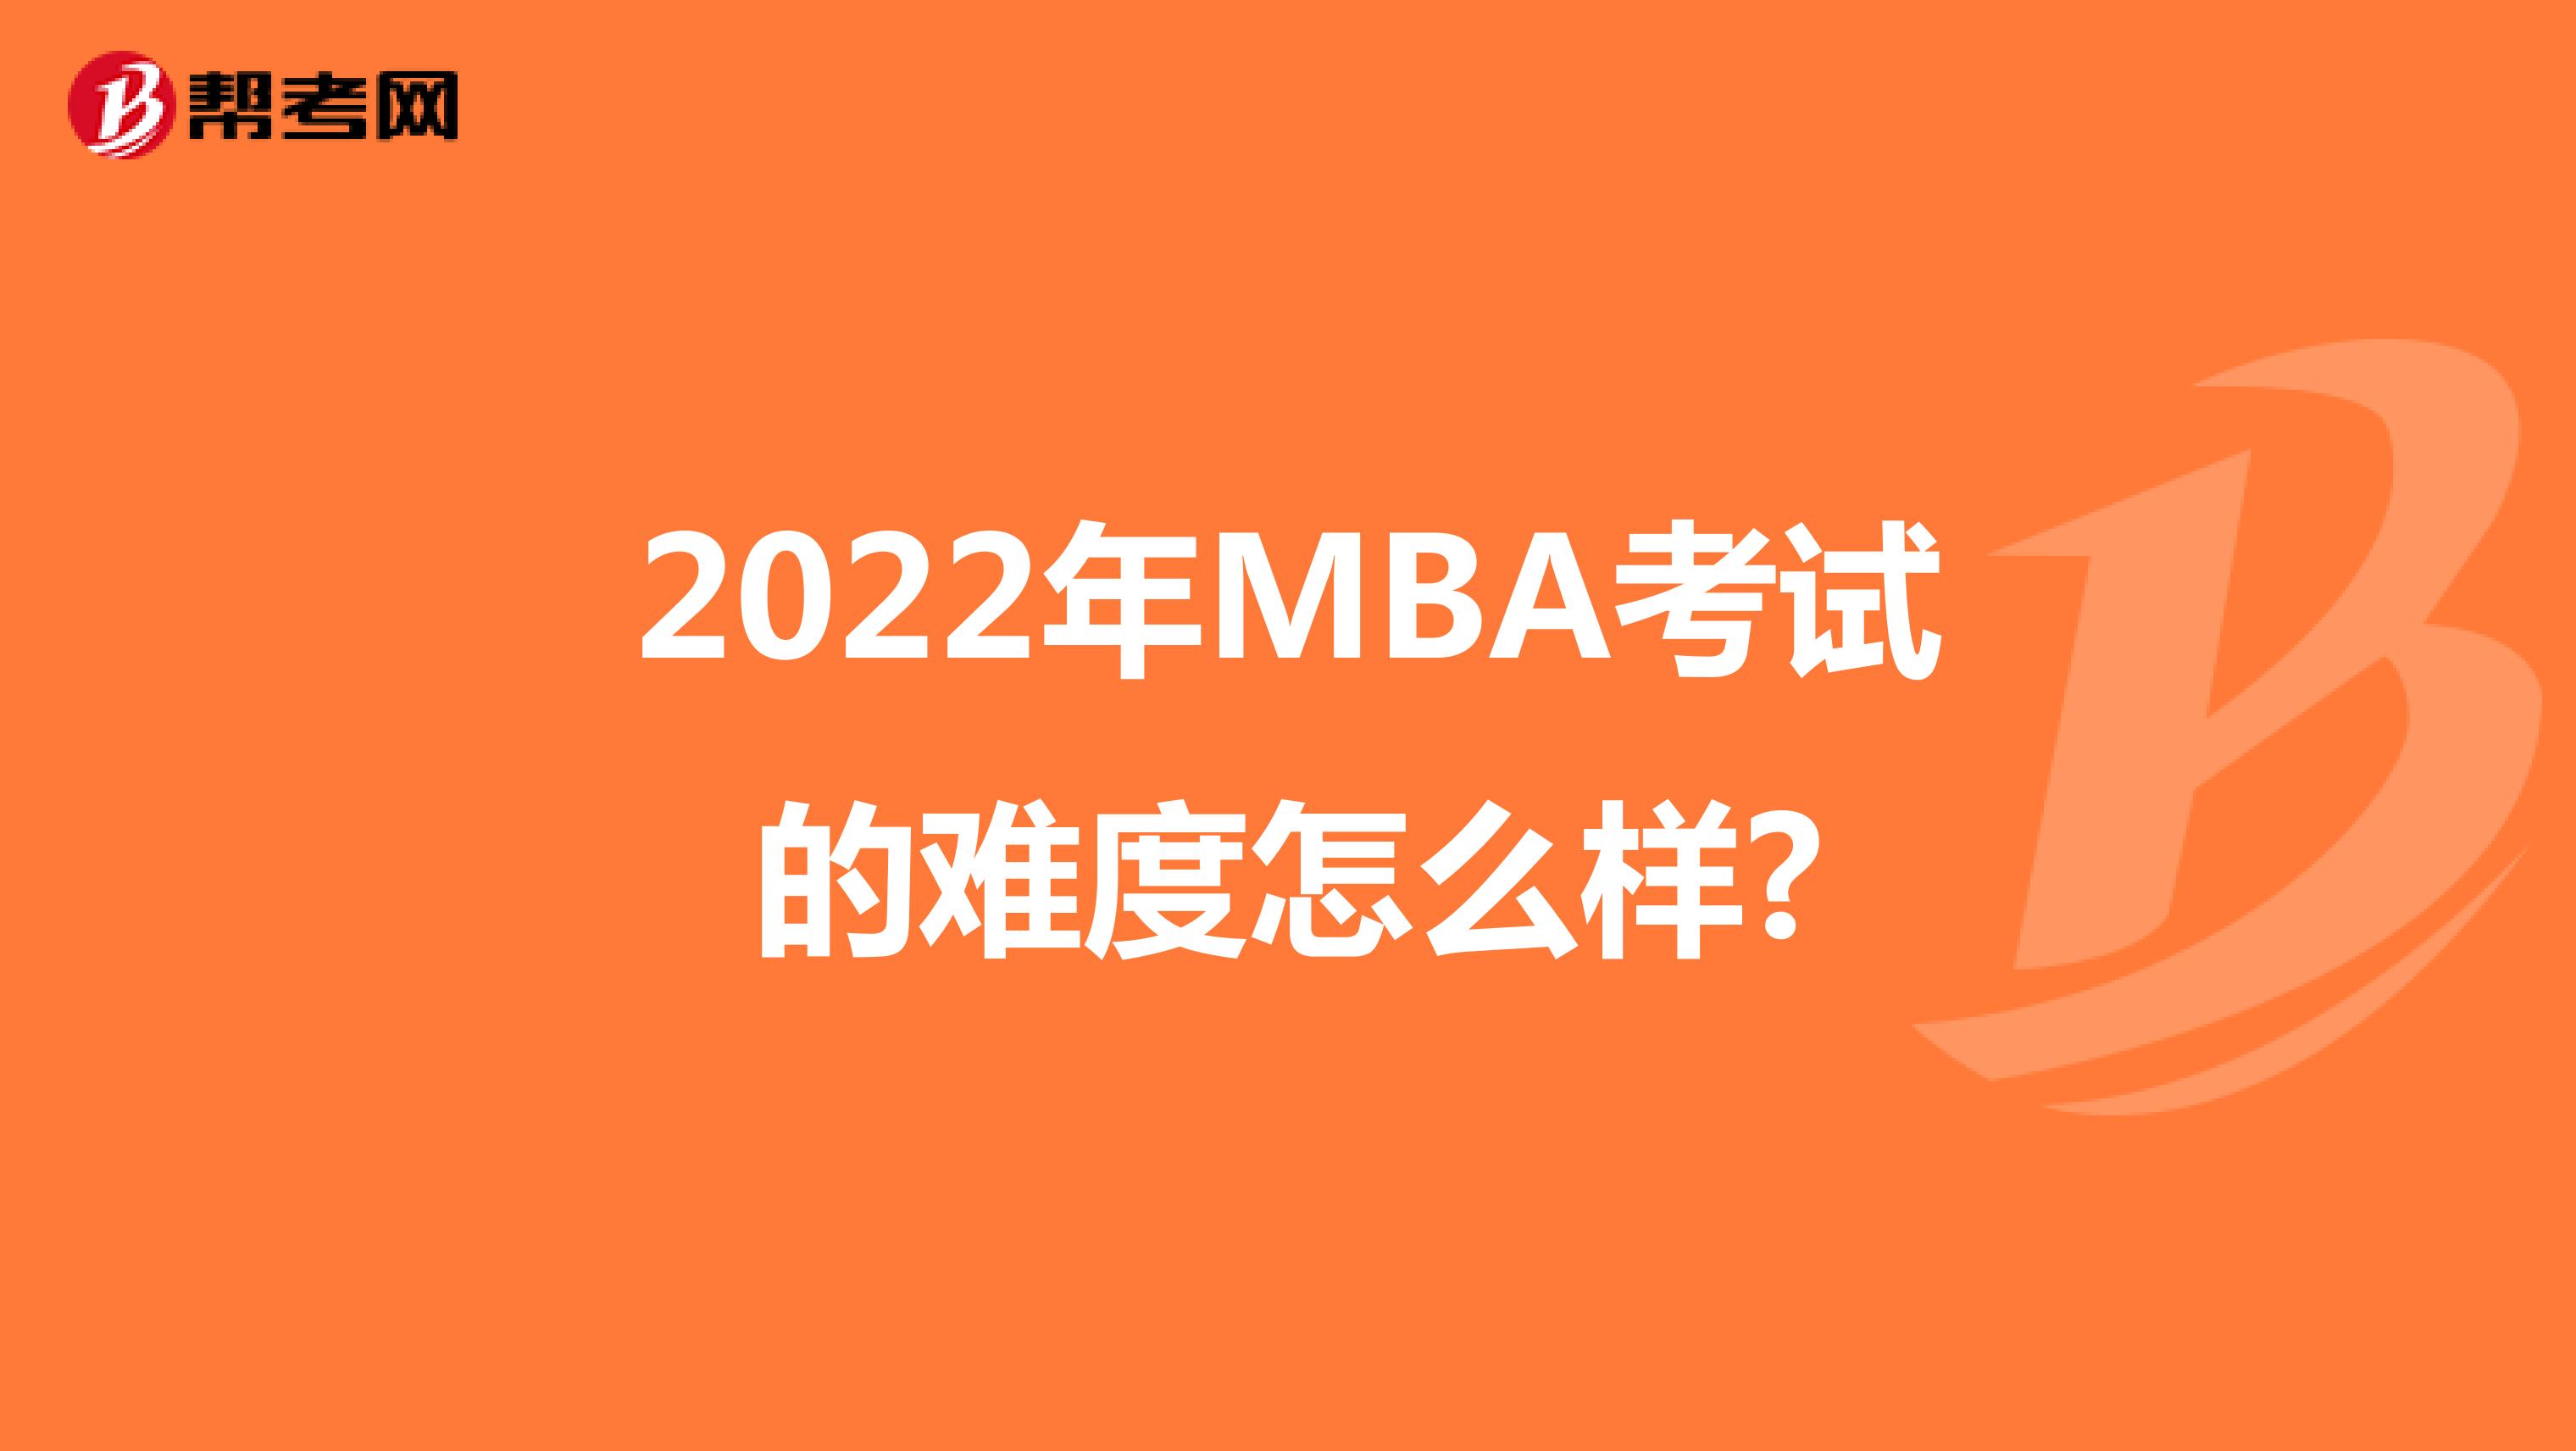 2022年MBA考试的难度怎么样?